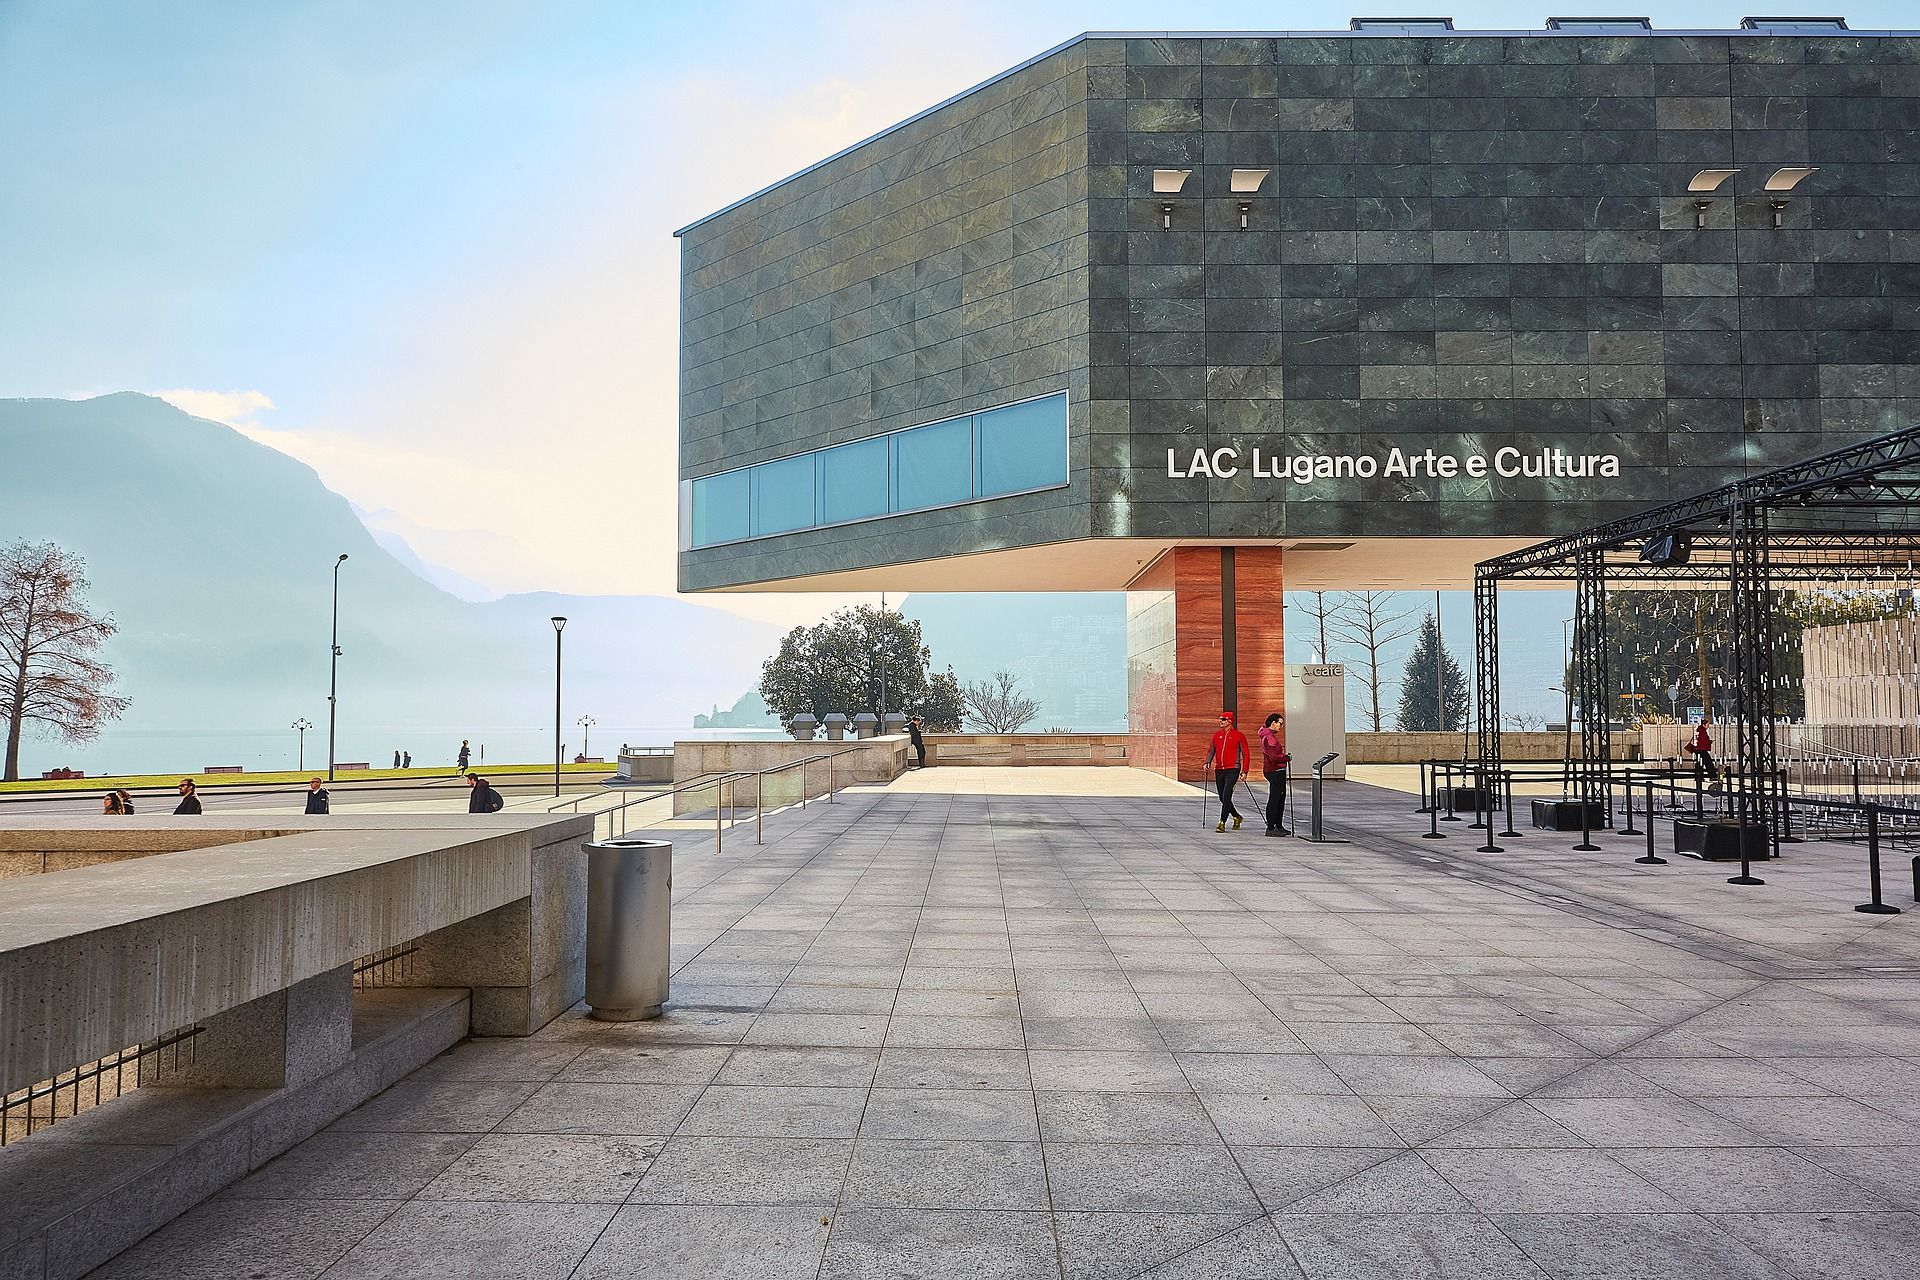 Il LAC, acronimo di Lugano, Arte e Cultura, è un centro culturale adagiato sul 